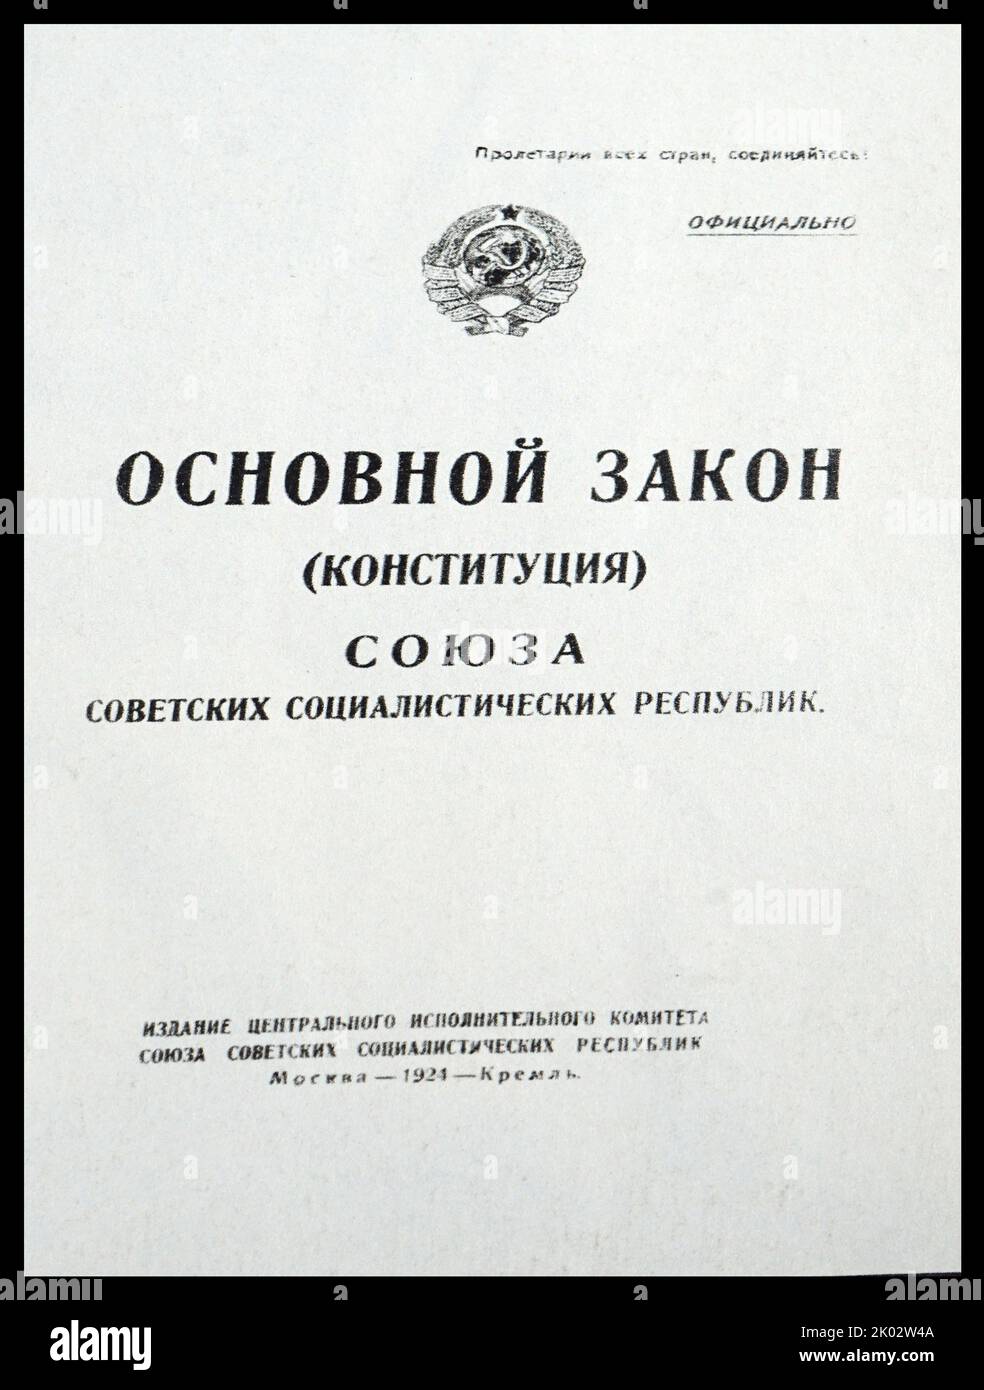 Die erste Verfassung der UdSSR. Am 30. Dezember 1922 wurde im Moskauer Bolschoi-Theater der erste All-Union-Sowjetkongress eröffnet, der einstimmig die Erklärung zur Bildung der UdSSR annahm. Der Kongress wählte das Zentralexekutivkomitee der UdSSR unter dem Vorsitz von M. I. Stockfoto